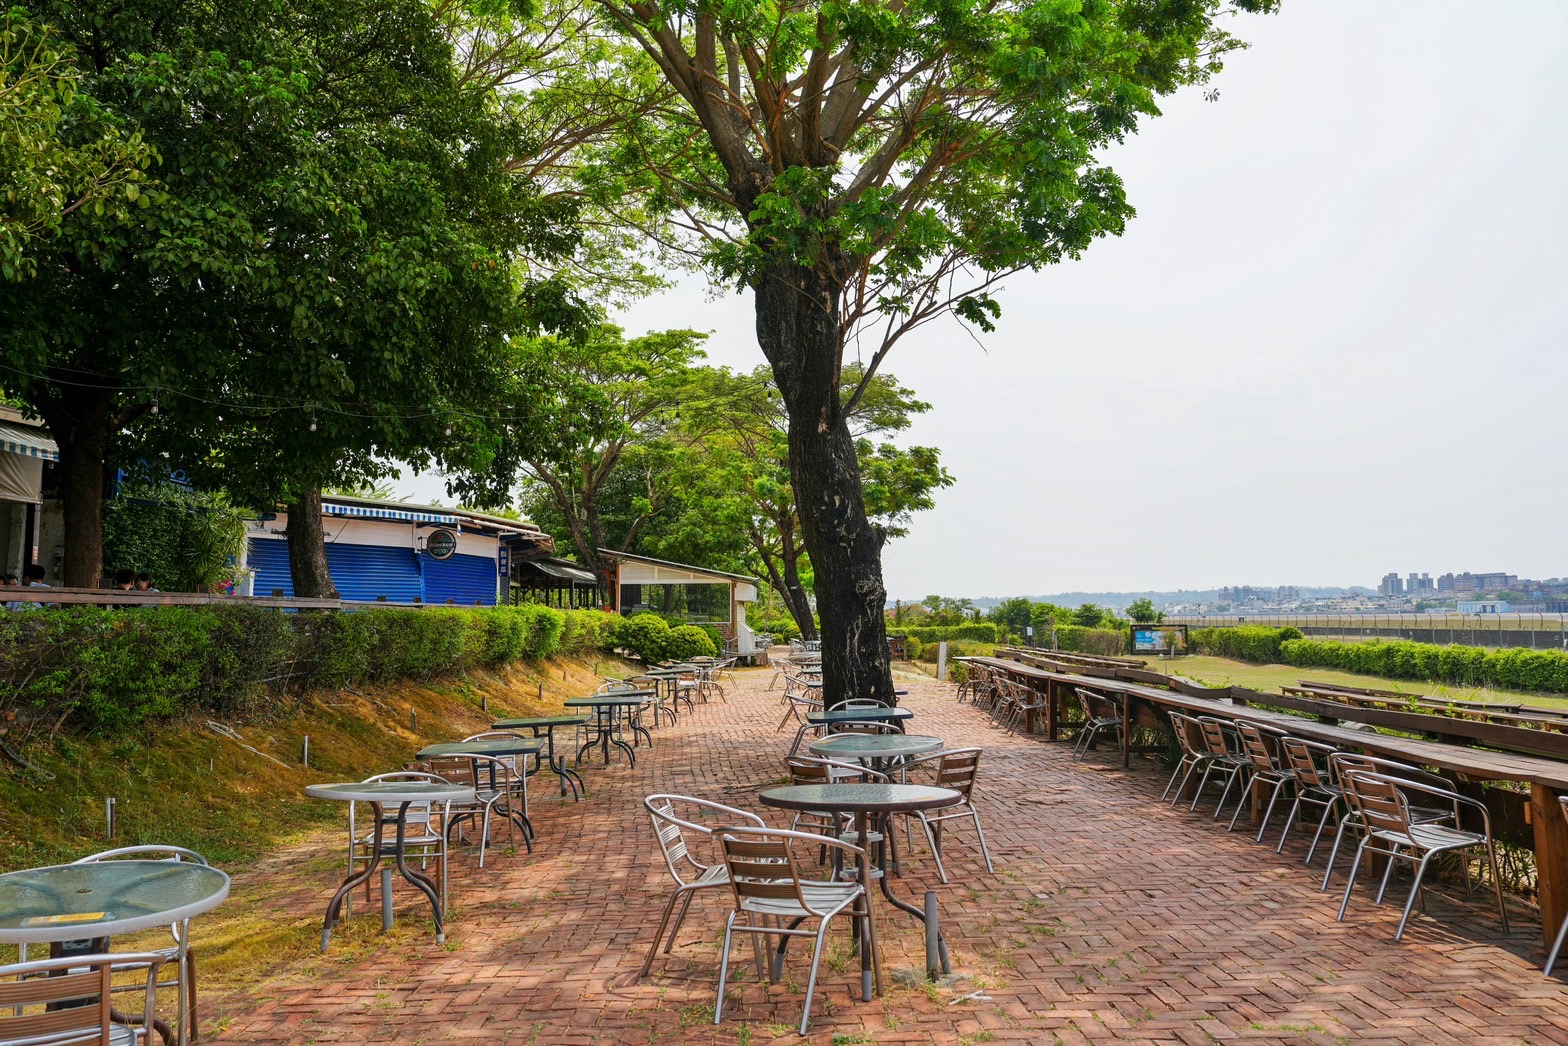 Air Thai餐酒館,夜泰美,淨園農場,空港咖啡,高雄,高雄景點